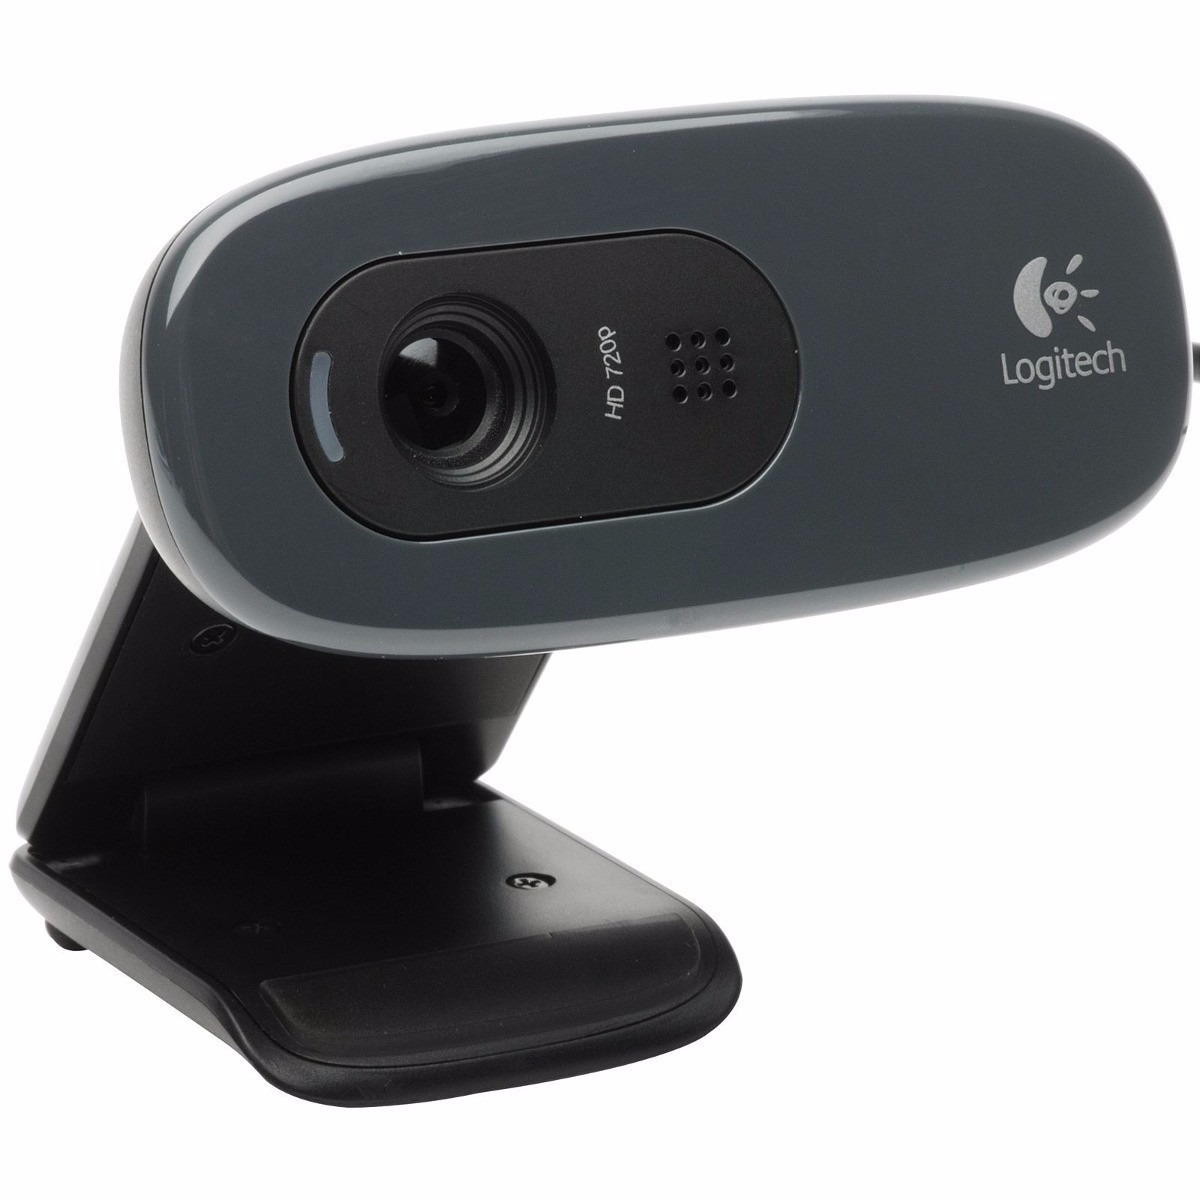 Logitech c270 hd webcam driver for xp